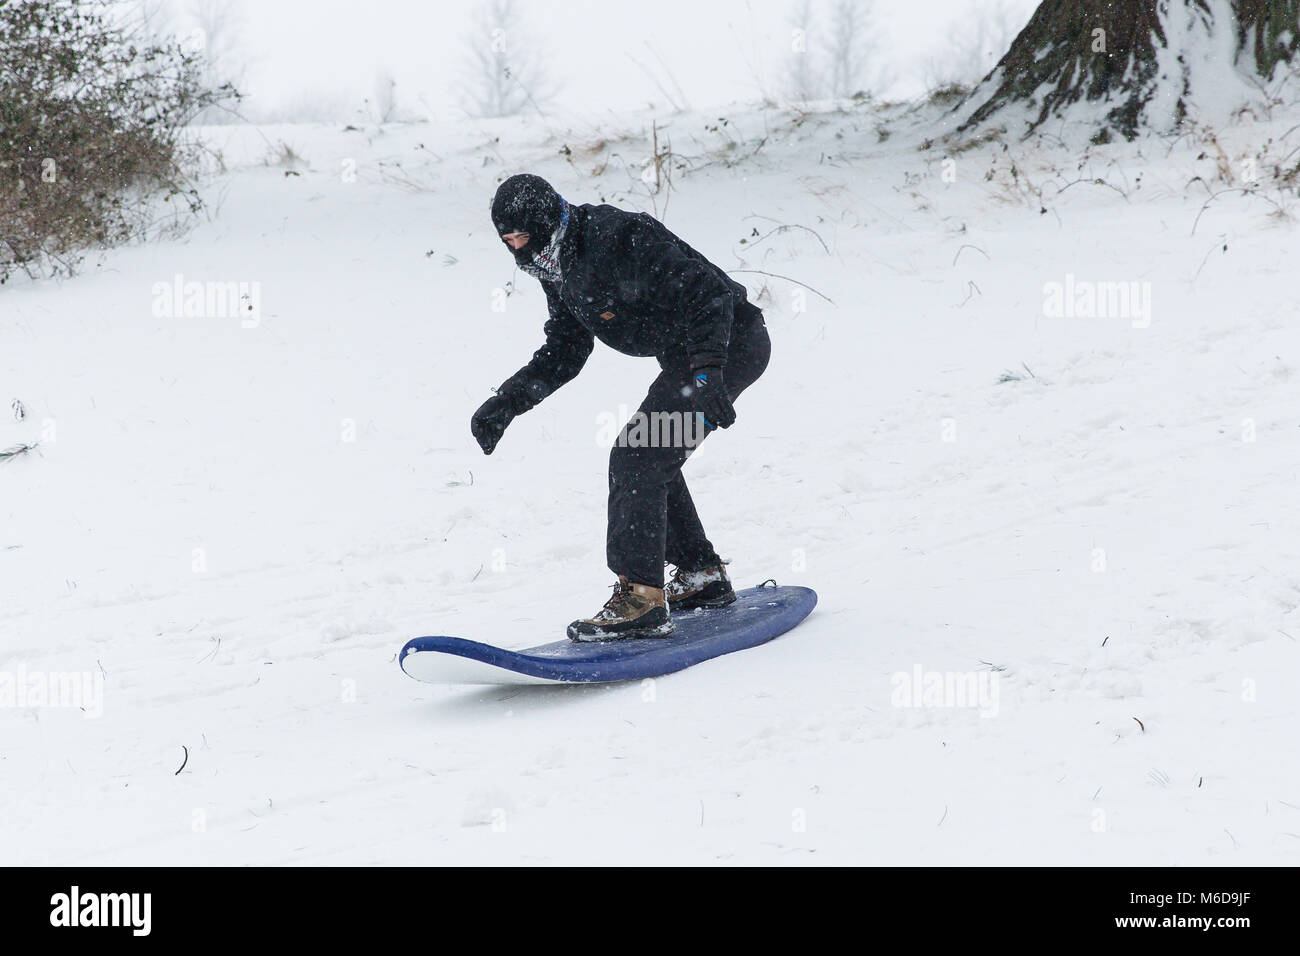 Celbridge, Kildare, Irland. 02 Mär 2018: Jugendliche mit Surf Board nach unten zu schieben Sie die Hügel mit Schnee bedeckt. Tier aus dem Osten durch Sturm Emma gefolgt brachte mehr Schnee und starke Winde in ganz Irland. Stockfoto